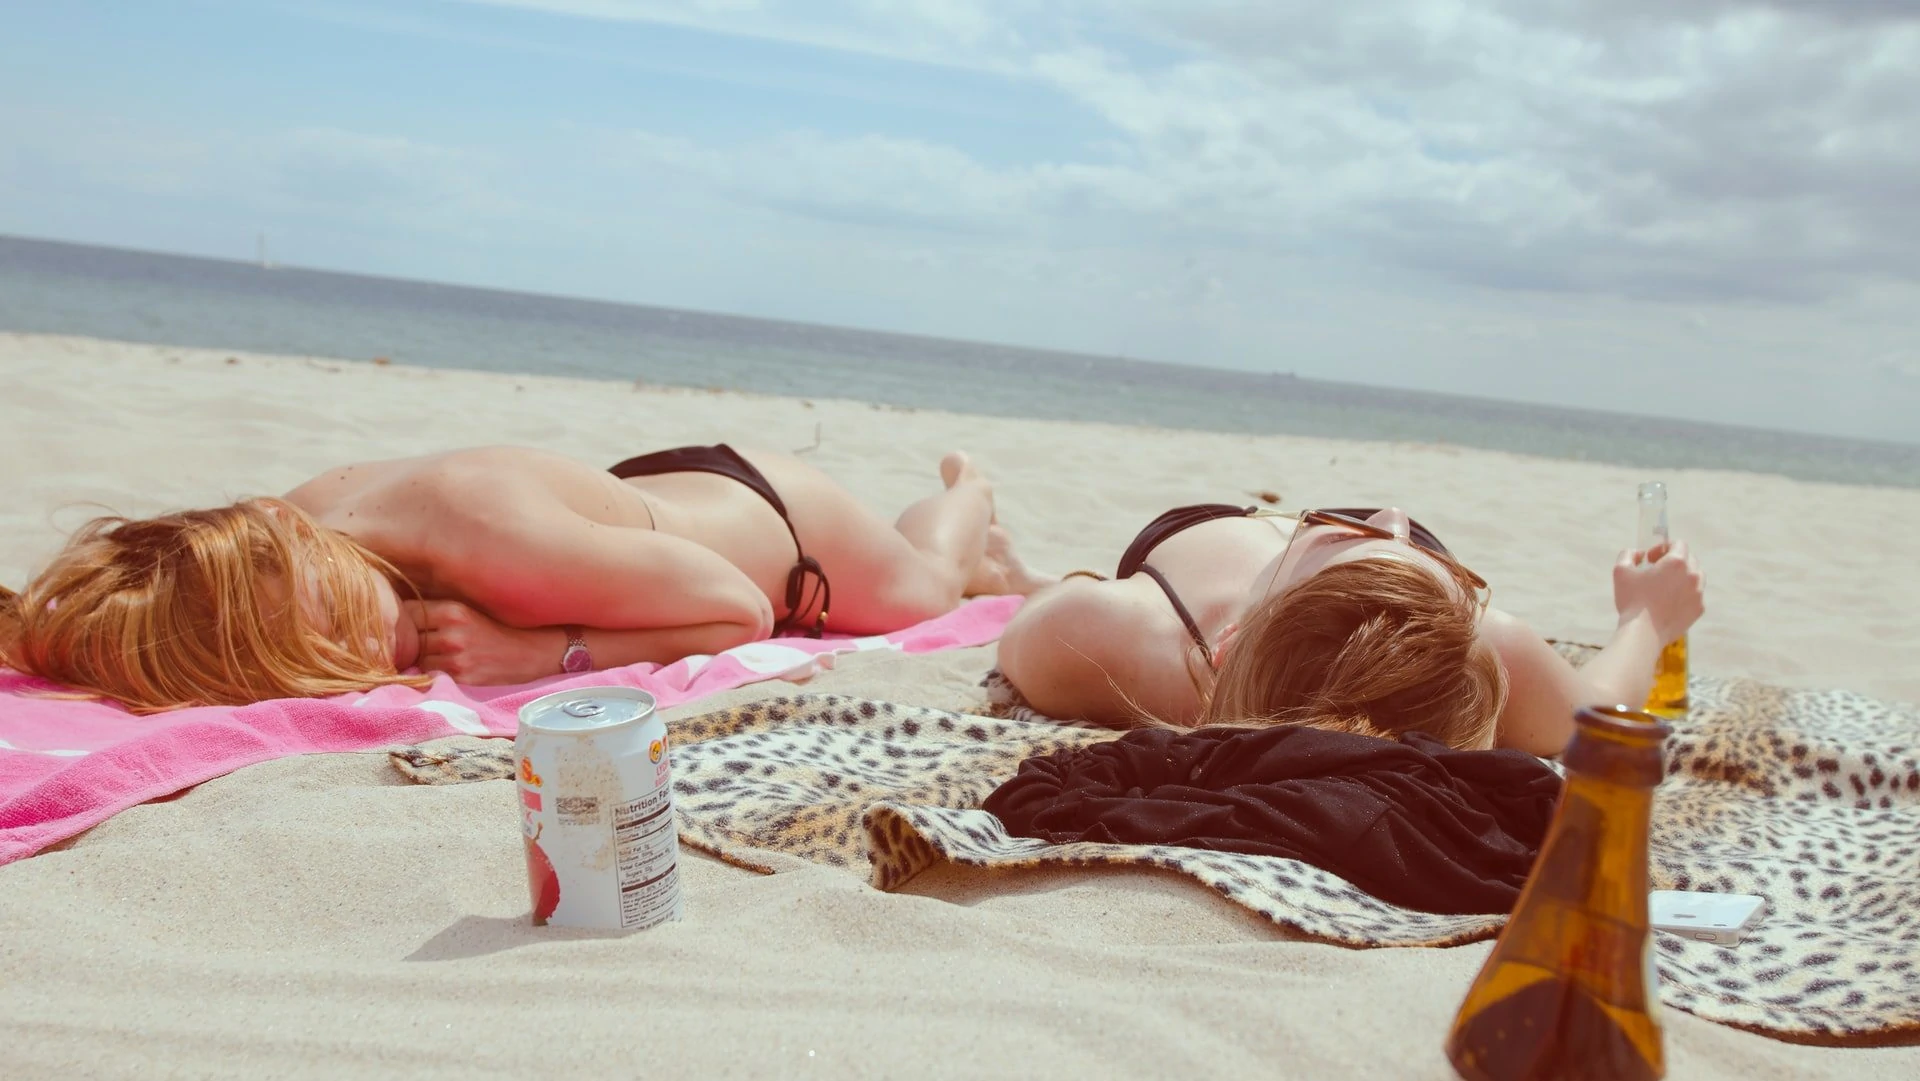 Twee mensen op het strand in de zon